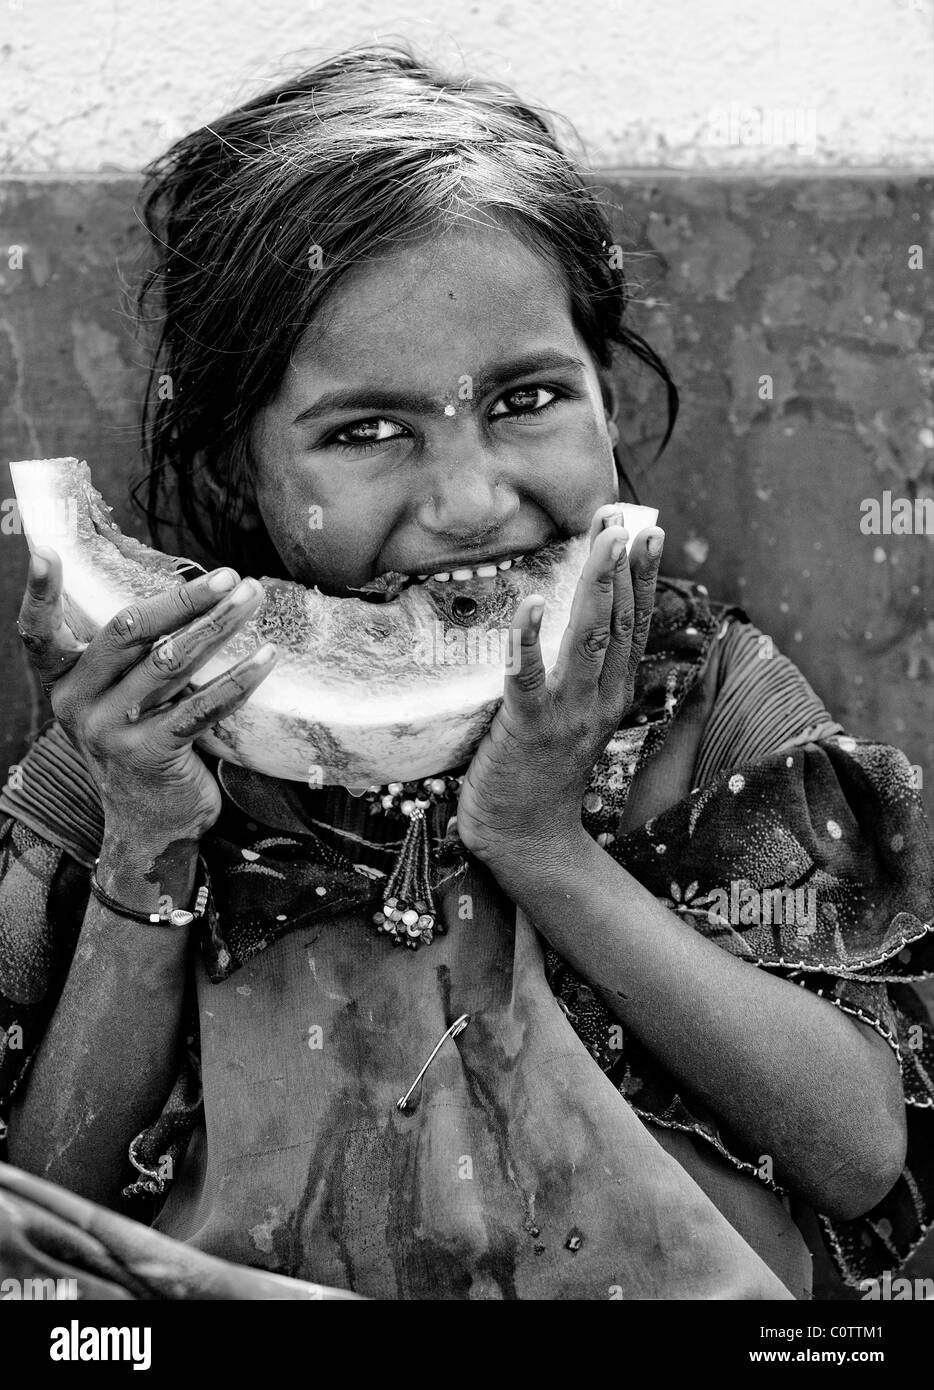 Heureux jeunes pauvres caste inférieure Indian street girl eating une tranche de pastèque. Monochrome Banque D'Images